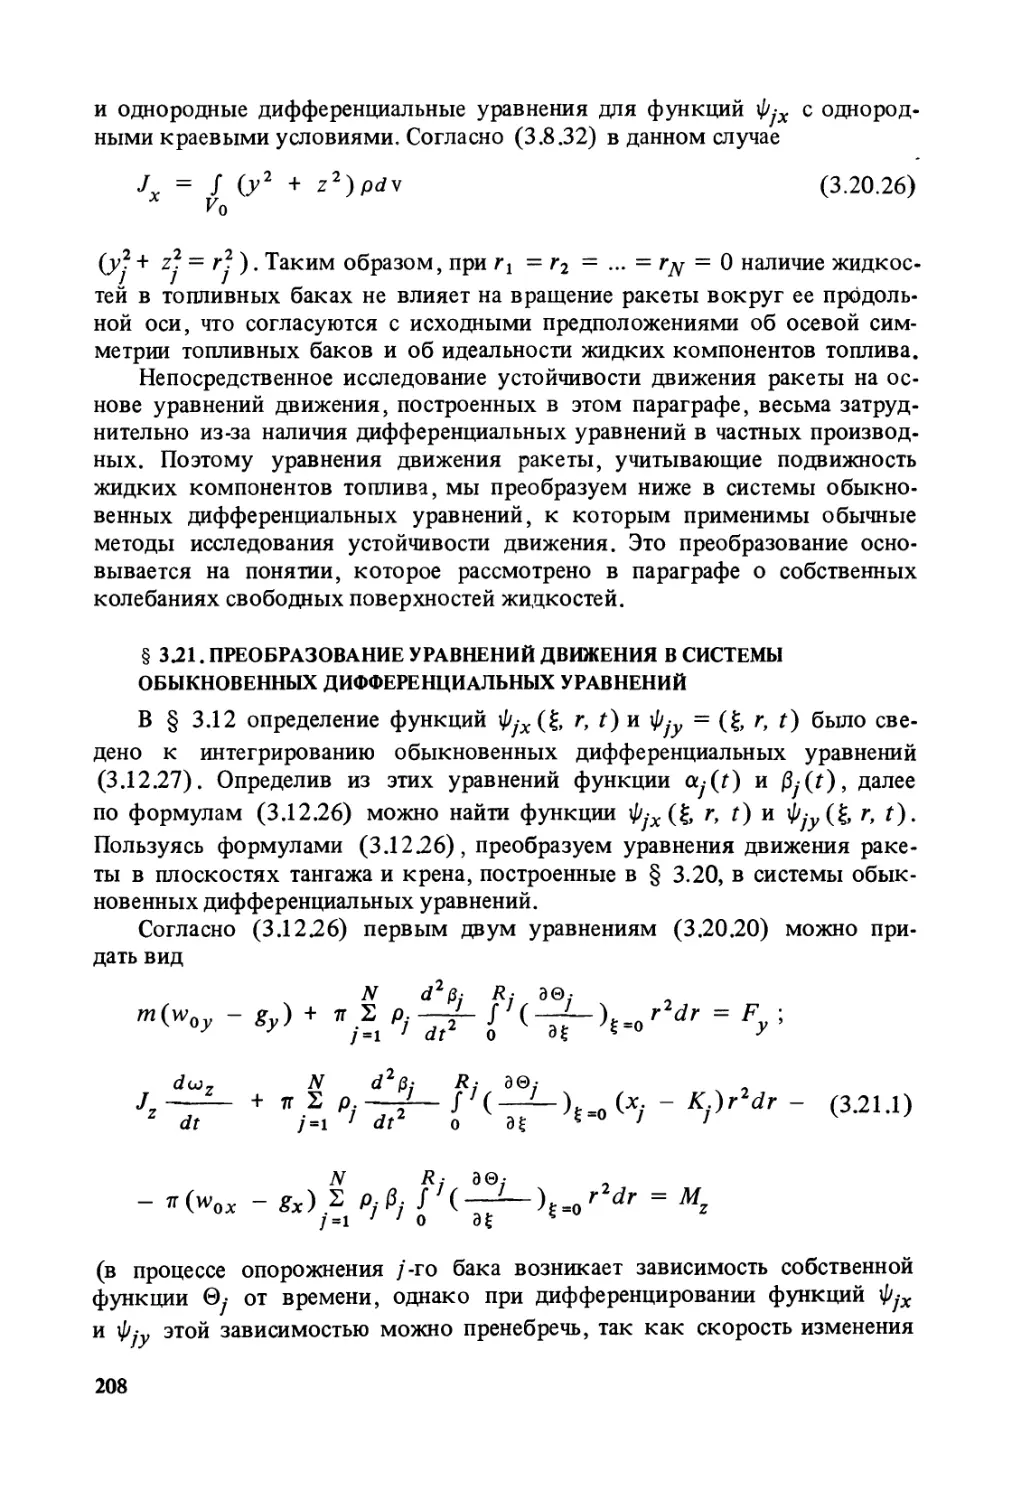 § 3.21. Преобразование уравнений движения в системы обыкновенных дифференциальных уравнений